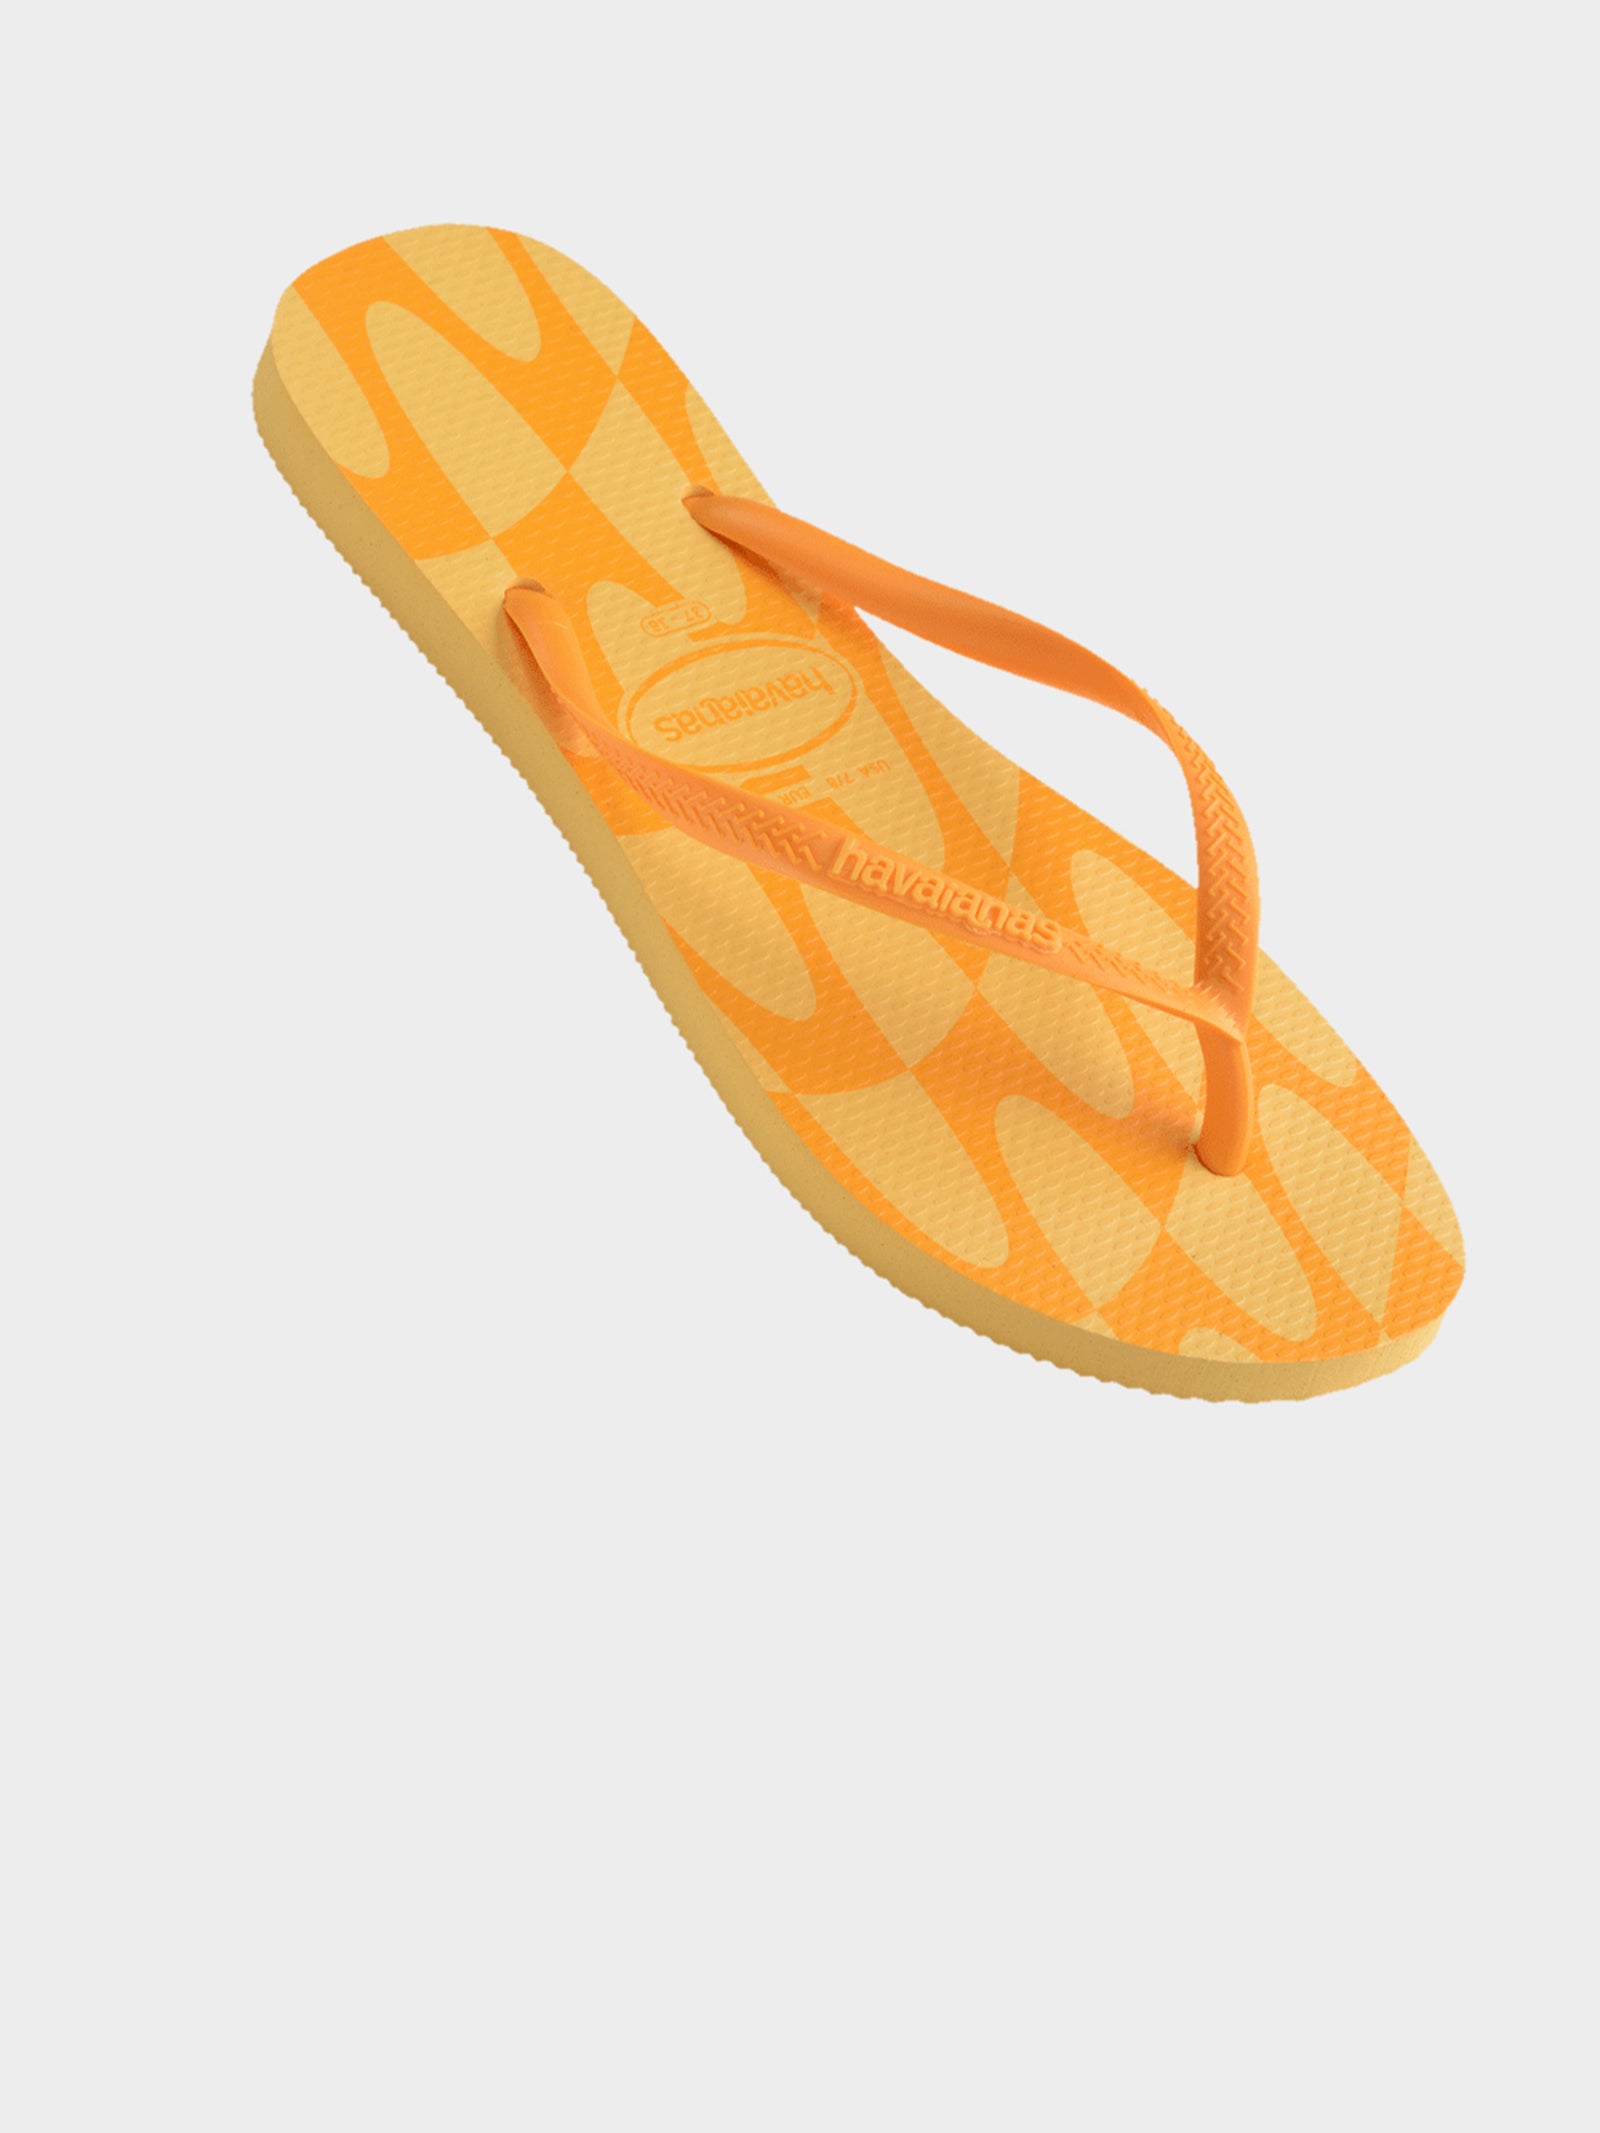 Unisex Slim Distorted Wave Thongs in Orange